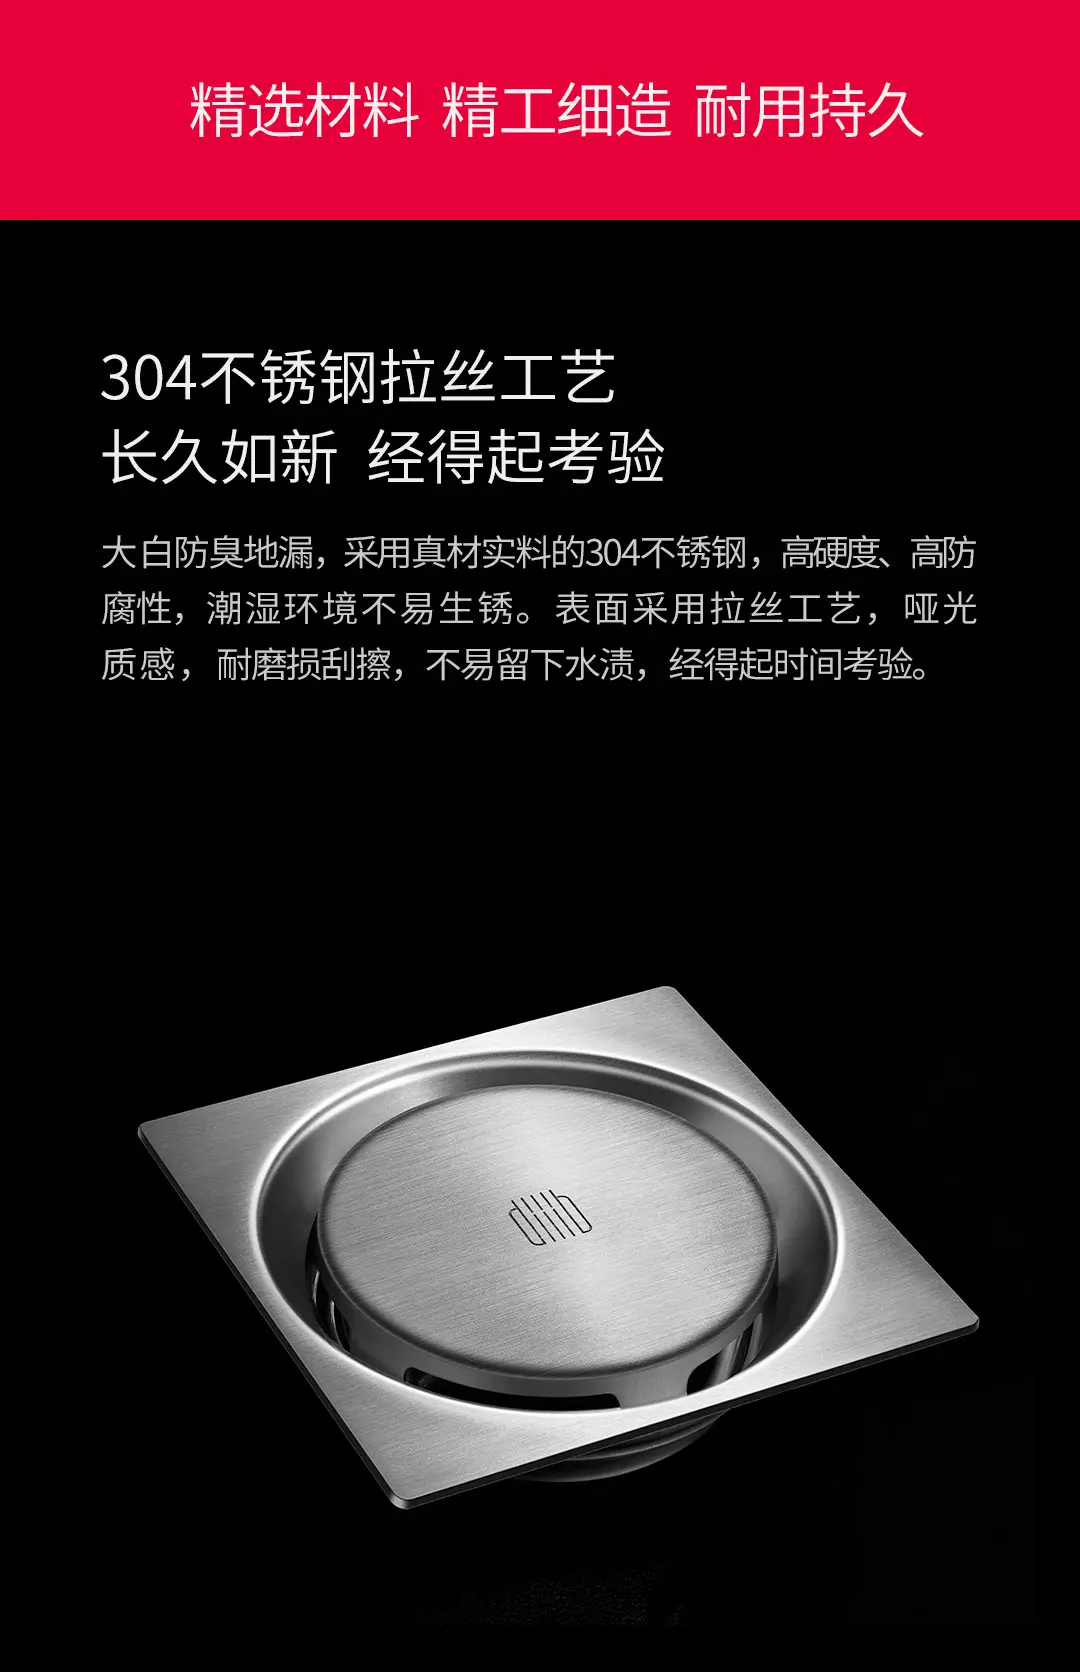 Xiaomi Mijia Youpin DaBai DiiiB дезодорант для слива пола и защита от насекомых 304 нержавеющая сталь поворотный дренаж